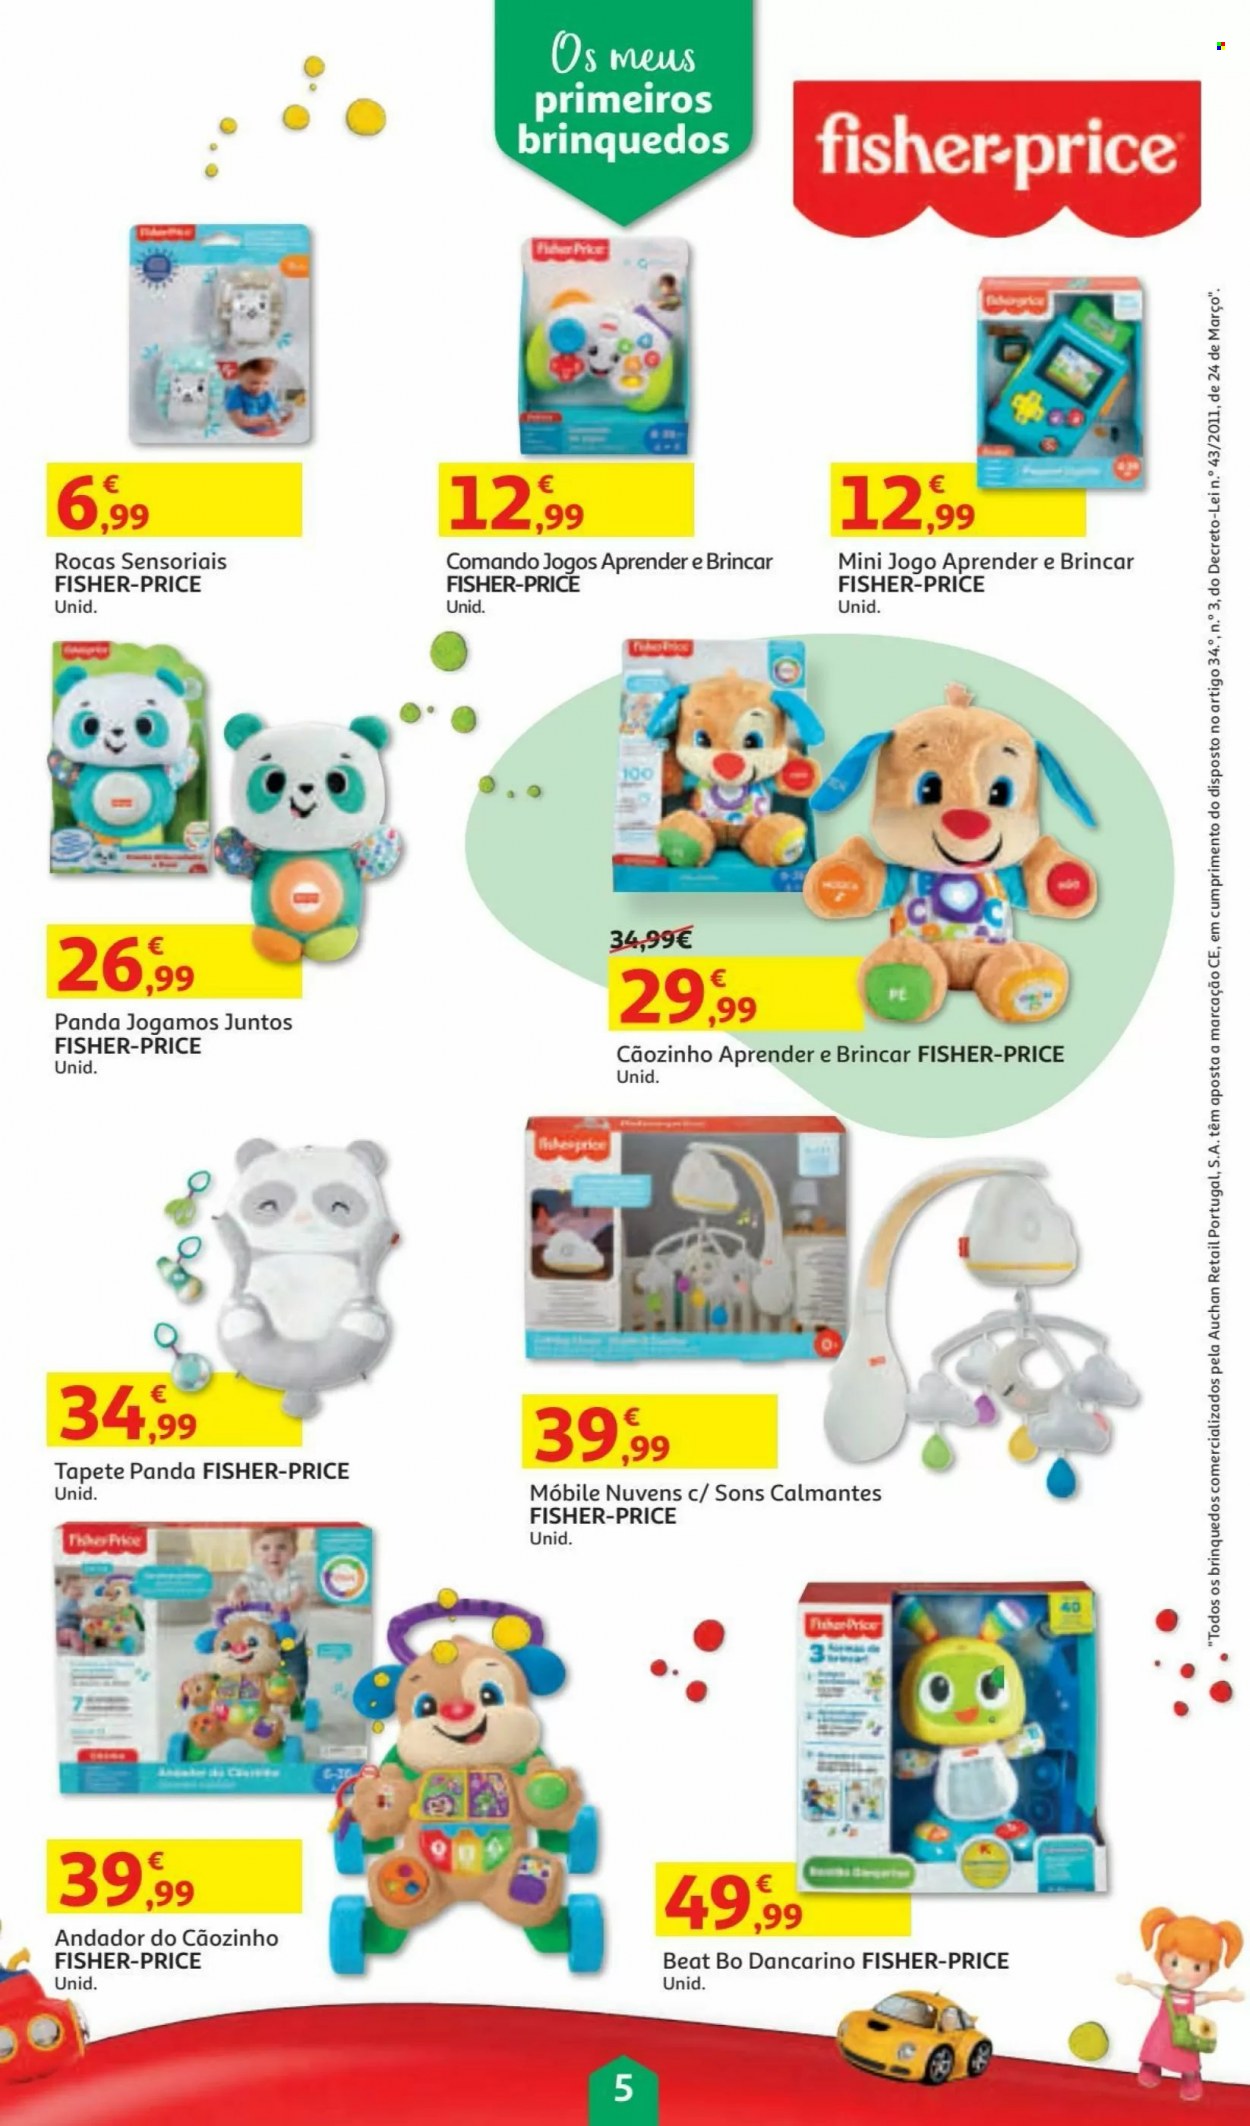 thumbnail - Folheto Auchan - 5.11.2021 - 24.12.2021 - Produtos em promoção - tapete, andador. Página 5.